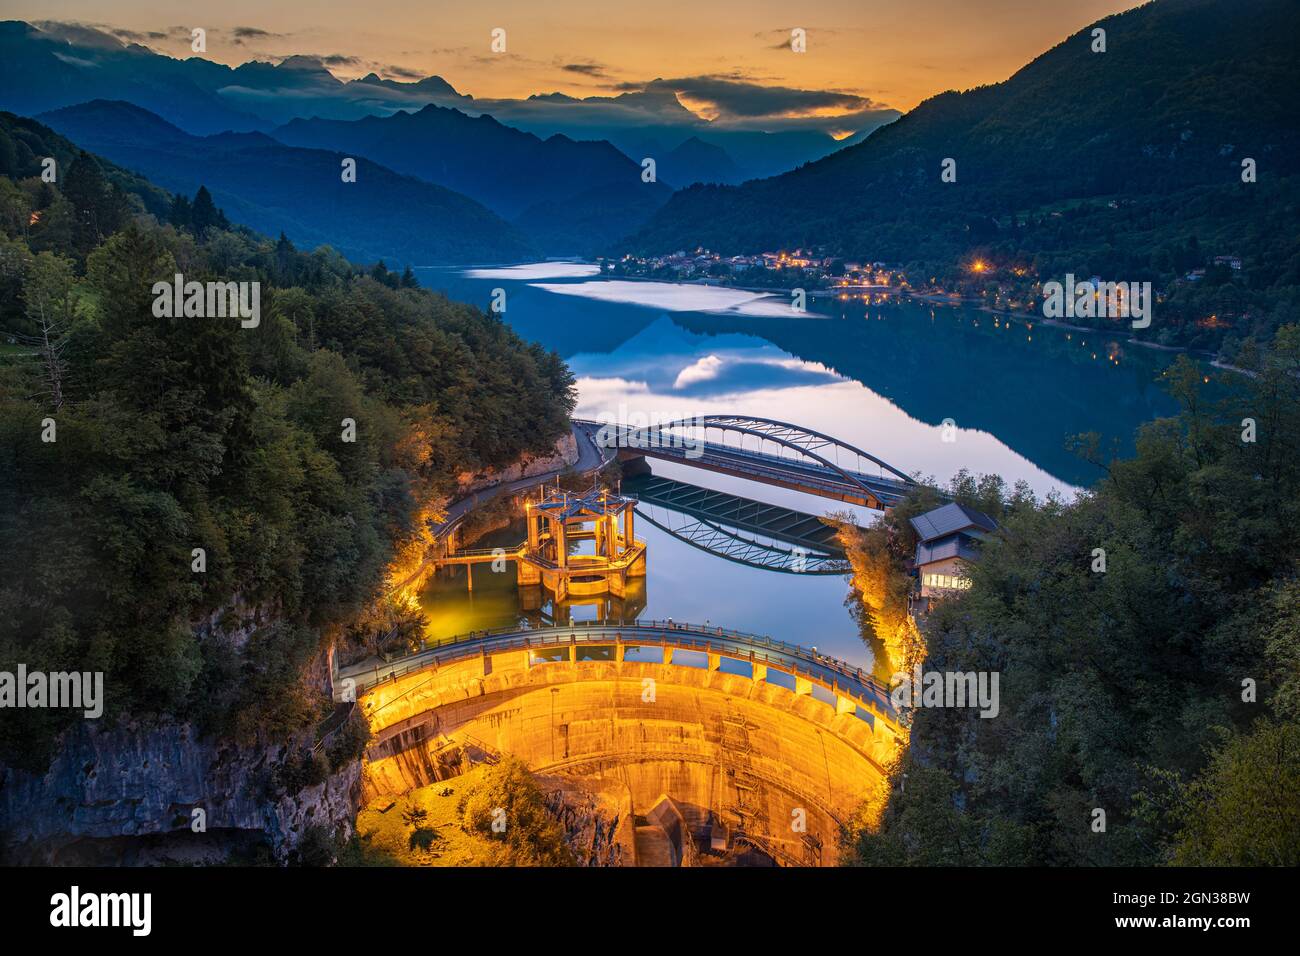 Vista aérea de una estación hidroeléctrica del lago de Barcis en Italia Foto de stock